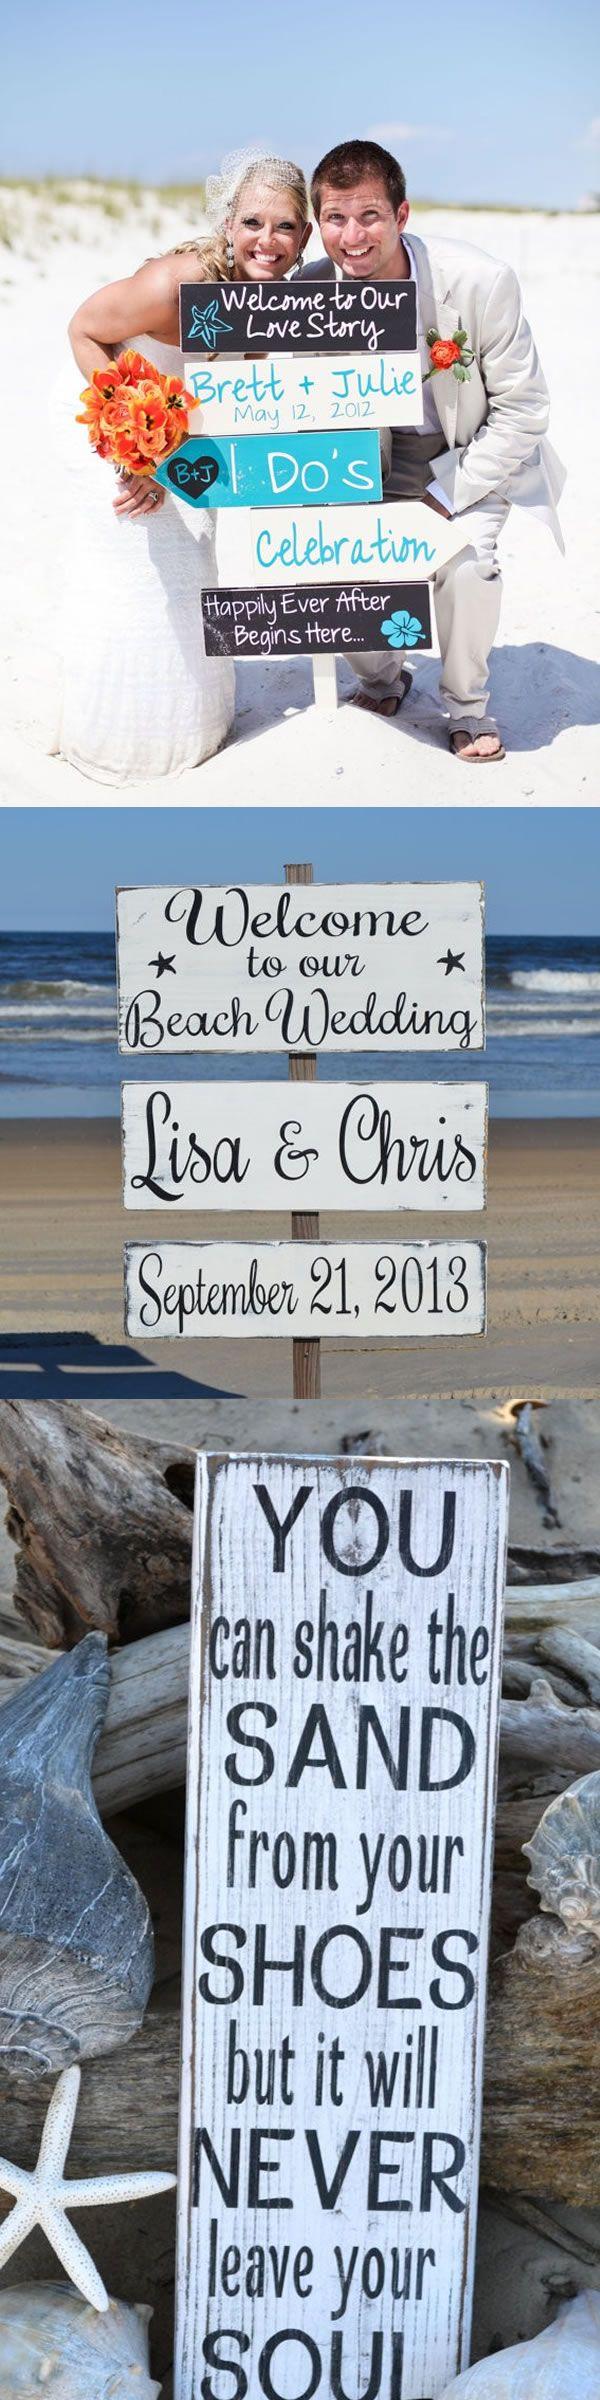 Wedding - Beach Wedding Decor Sign - Dreamyweddingideas.com